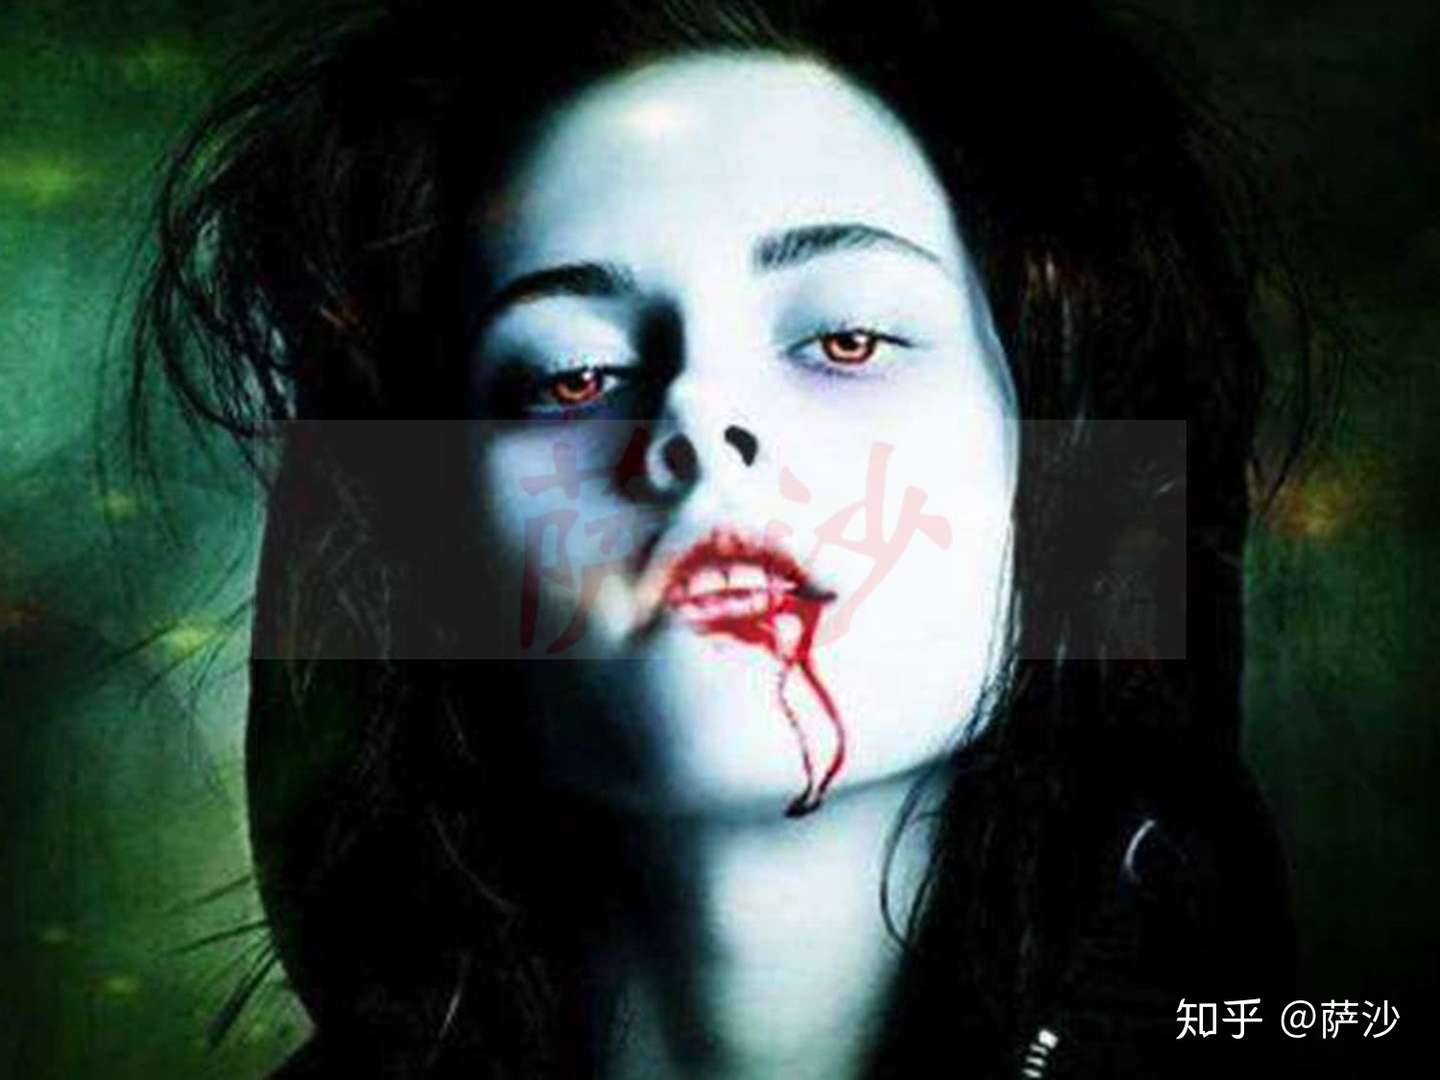 95年上海有吸血鬼杀人吸血 谣言 神话还是确有其事 知乎